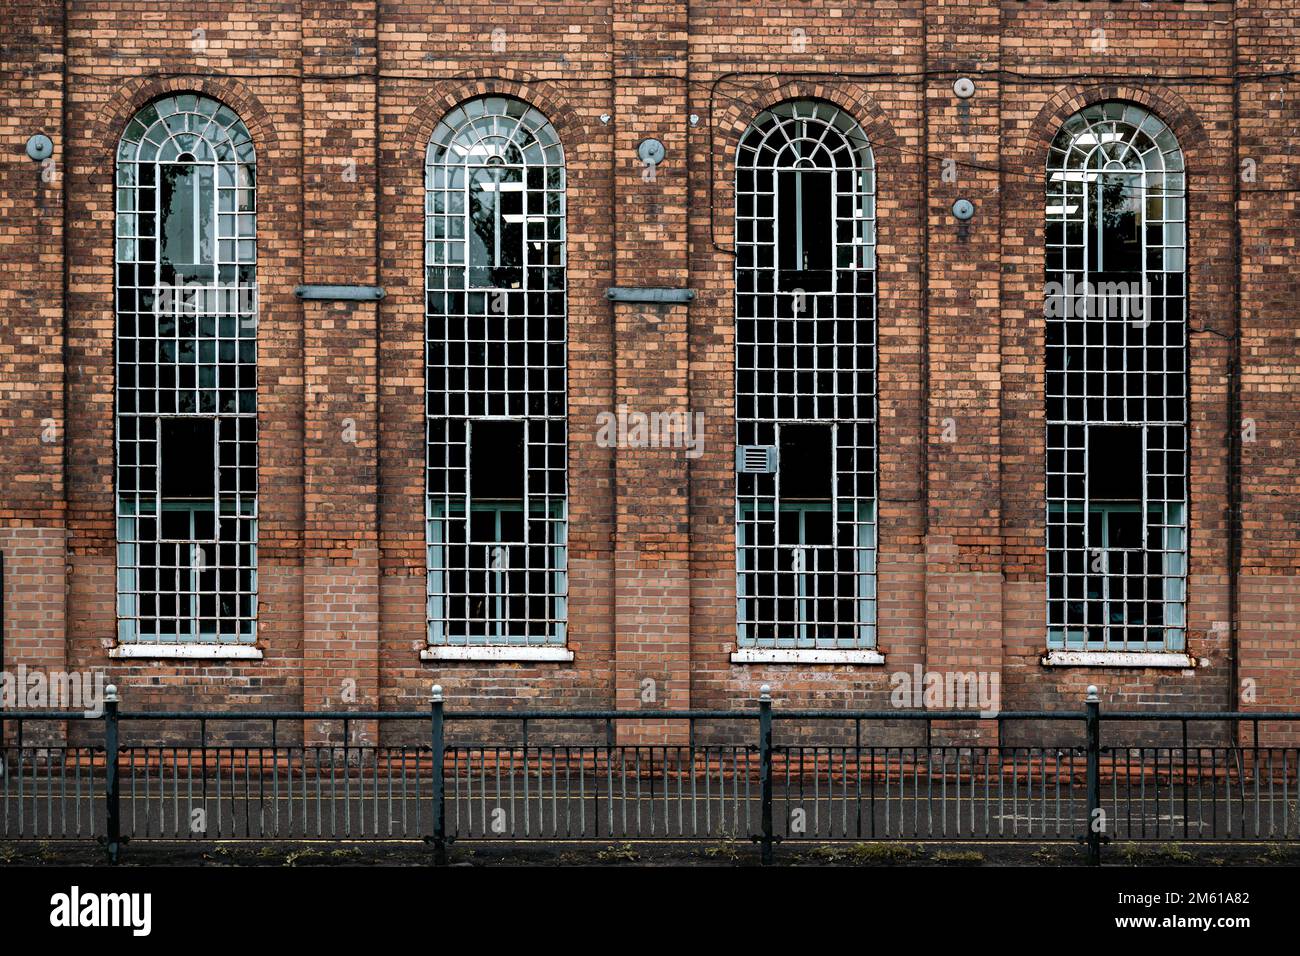 Détail de certains bâtiments industriels anciens avec de grandes fenêtres voûtées. Ingénierie, locaux commerciaux, atelier, concept industriel. Banque D'Images